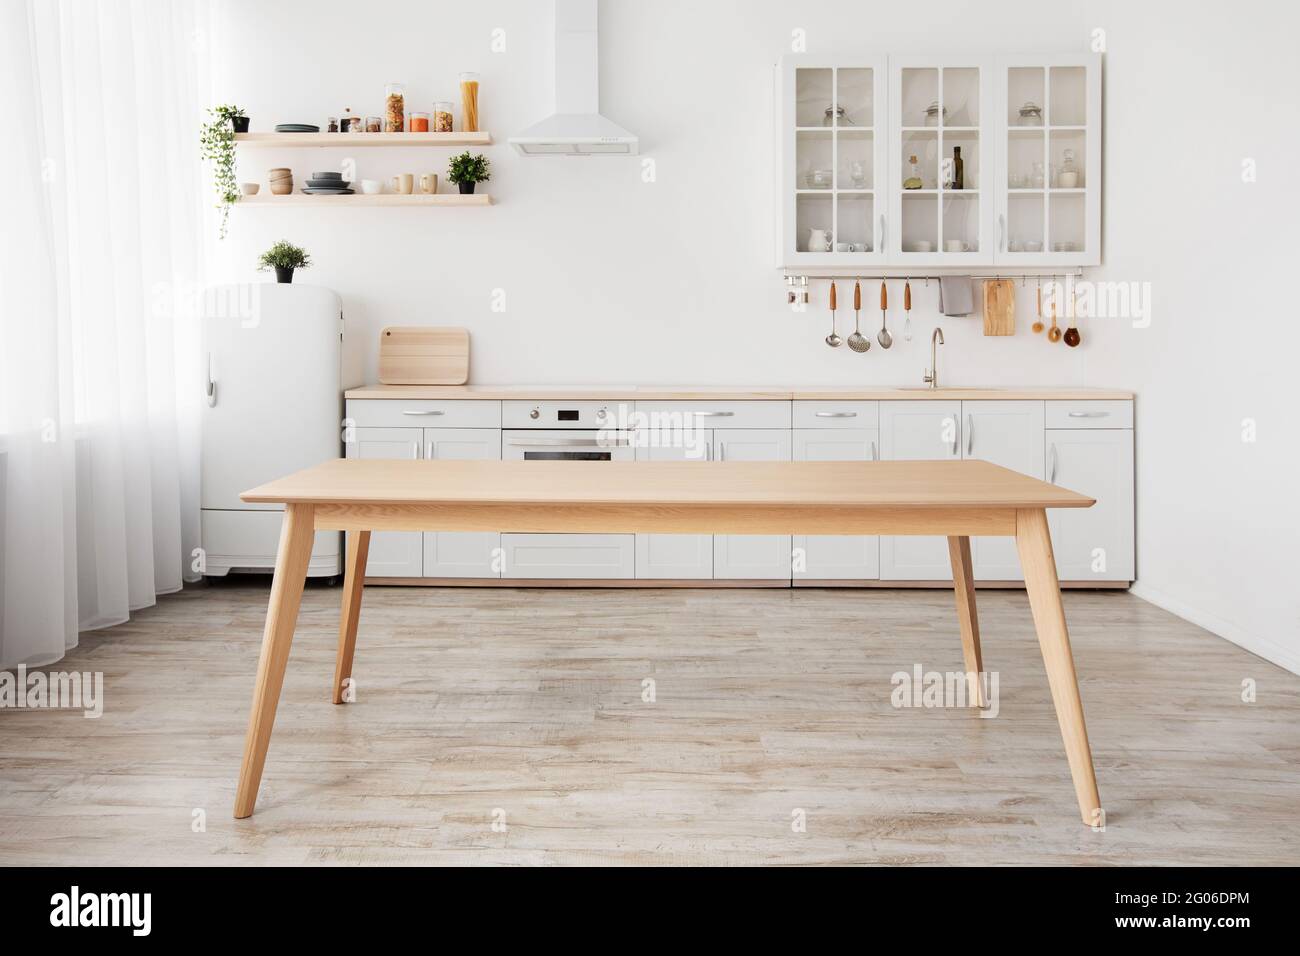 Esszimmer und minimalistisches Design der Küche. Leerer Holztisch, weiße Möbel und verschiedene Utensilien, kleiner Kühlschrank Stockfoto